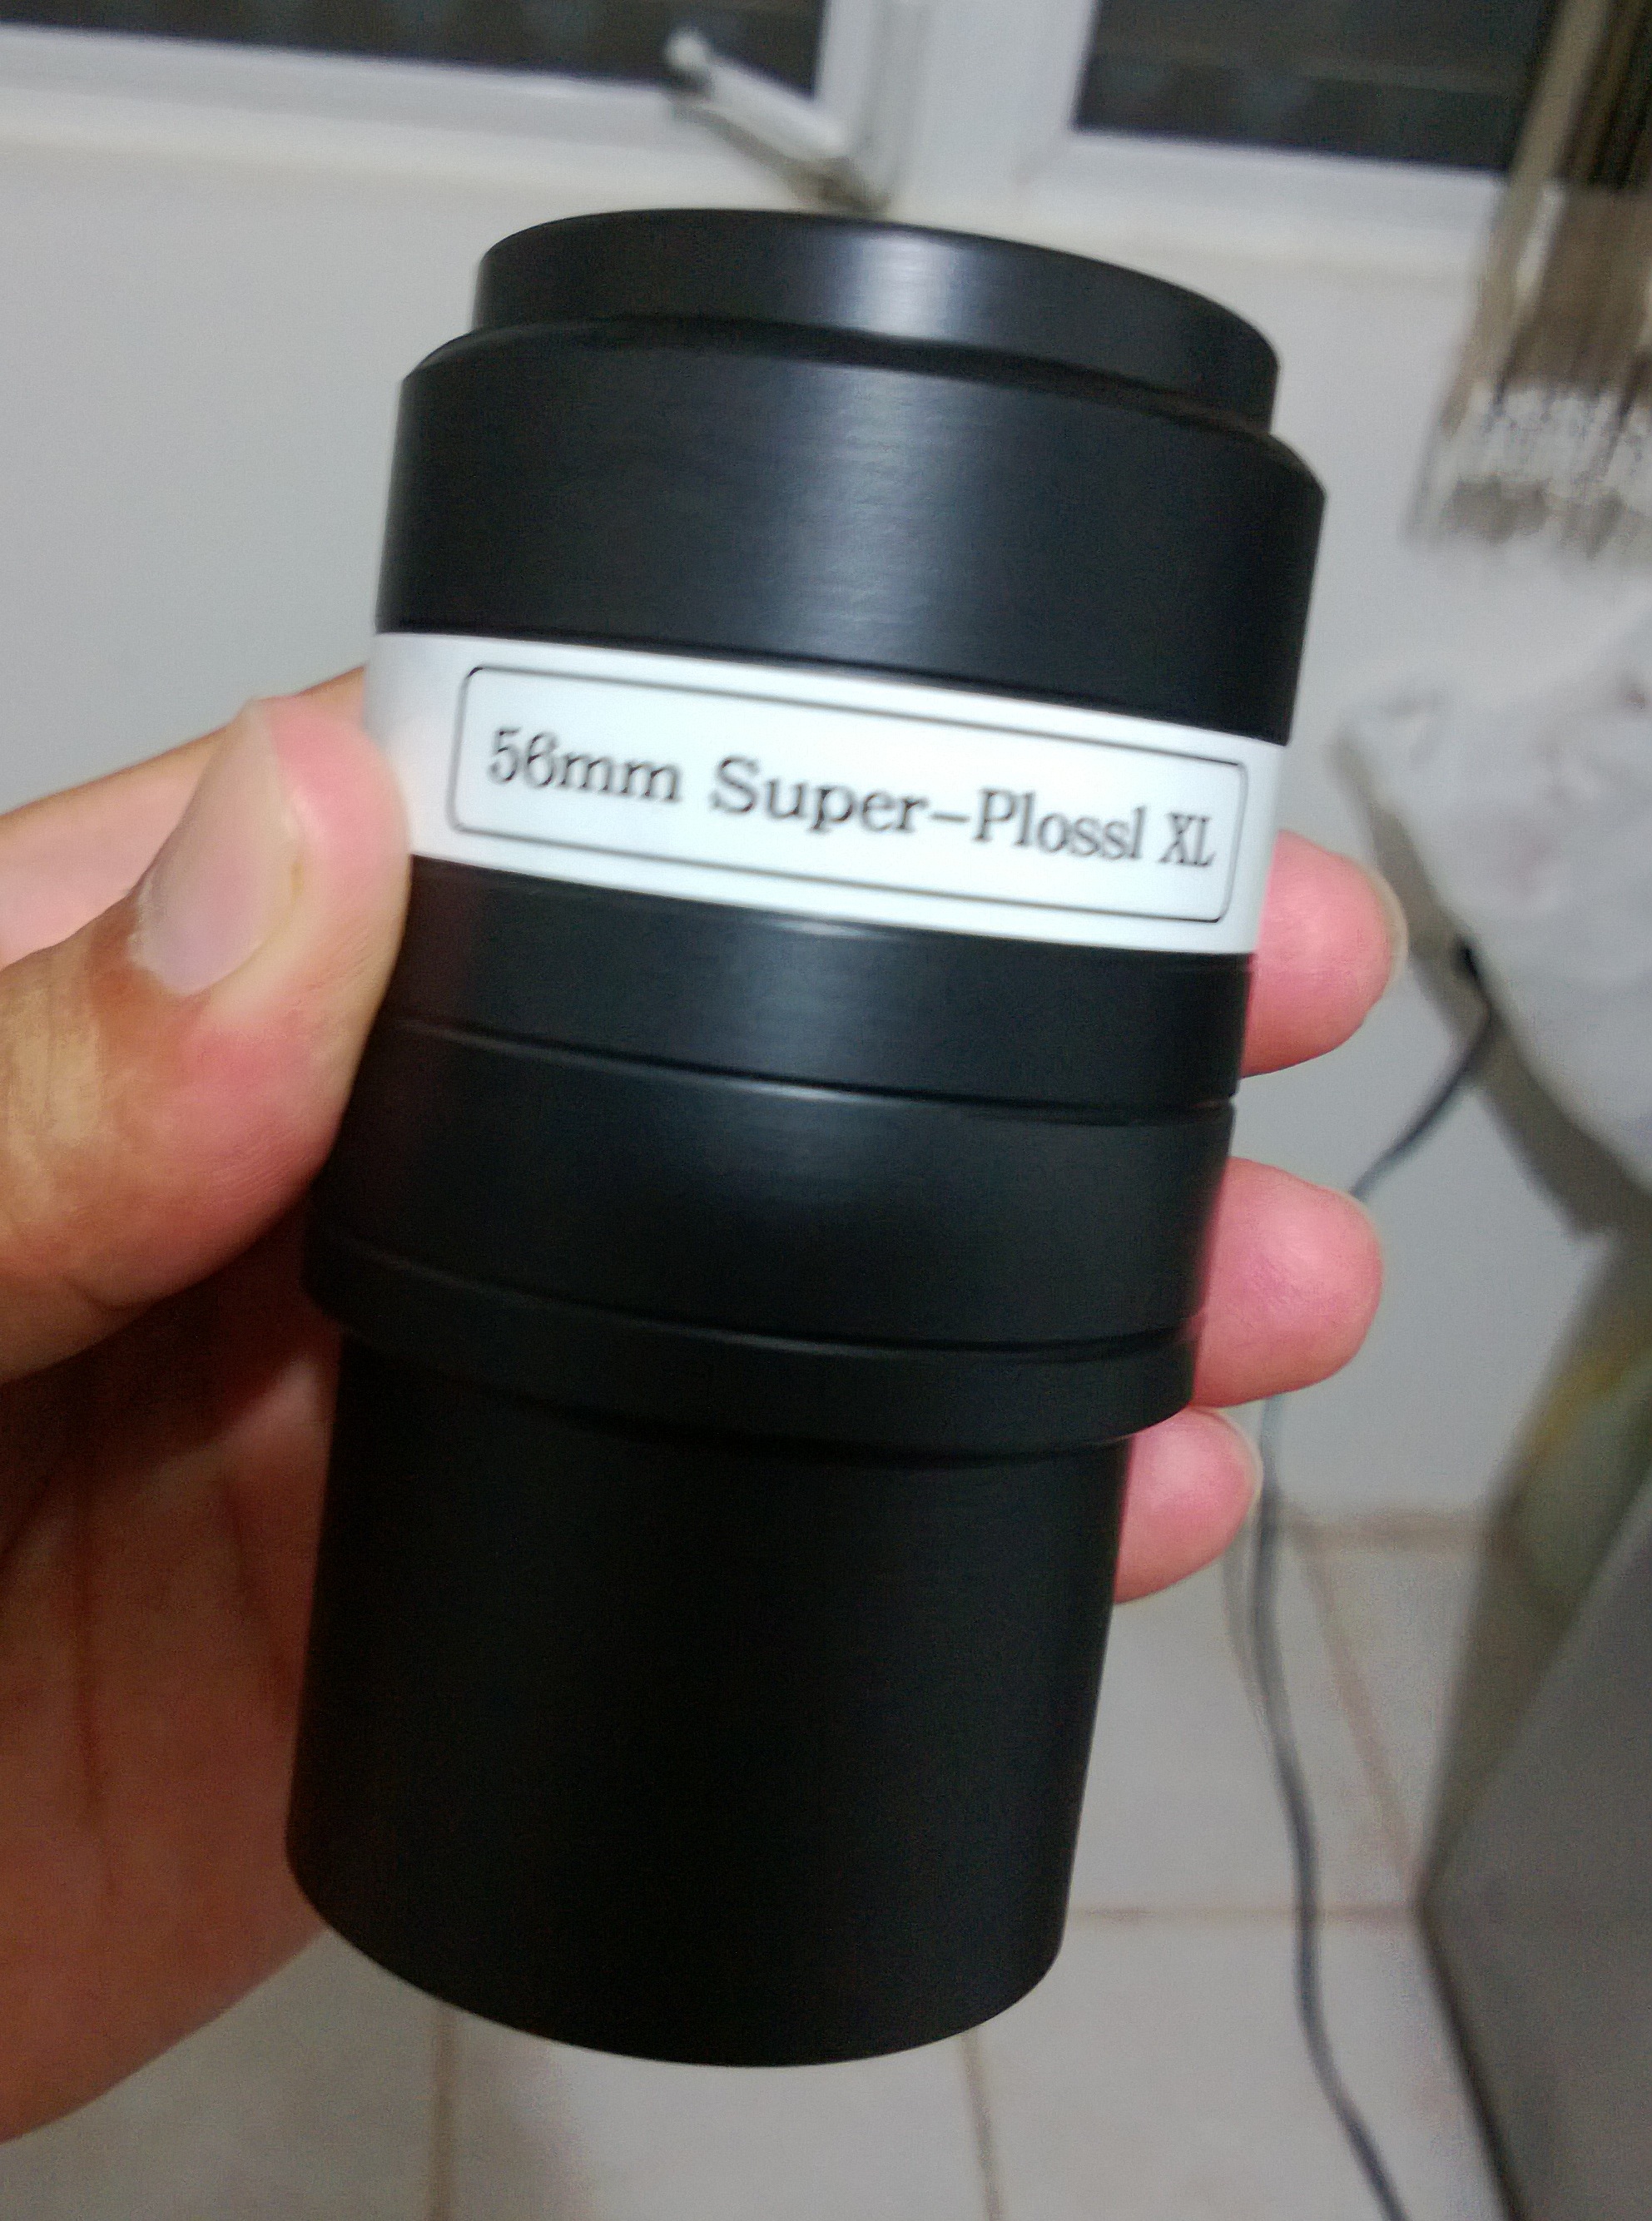 Ocular Super Plossl XL 56mm, por Russell Optics.